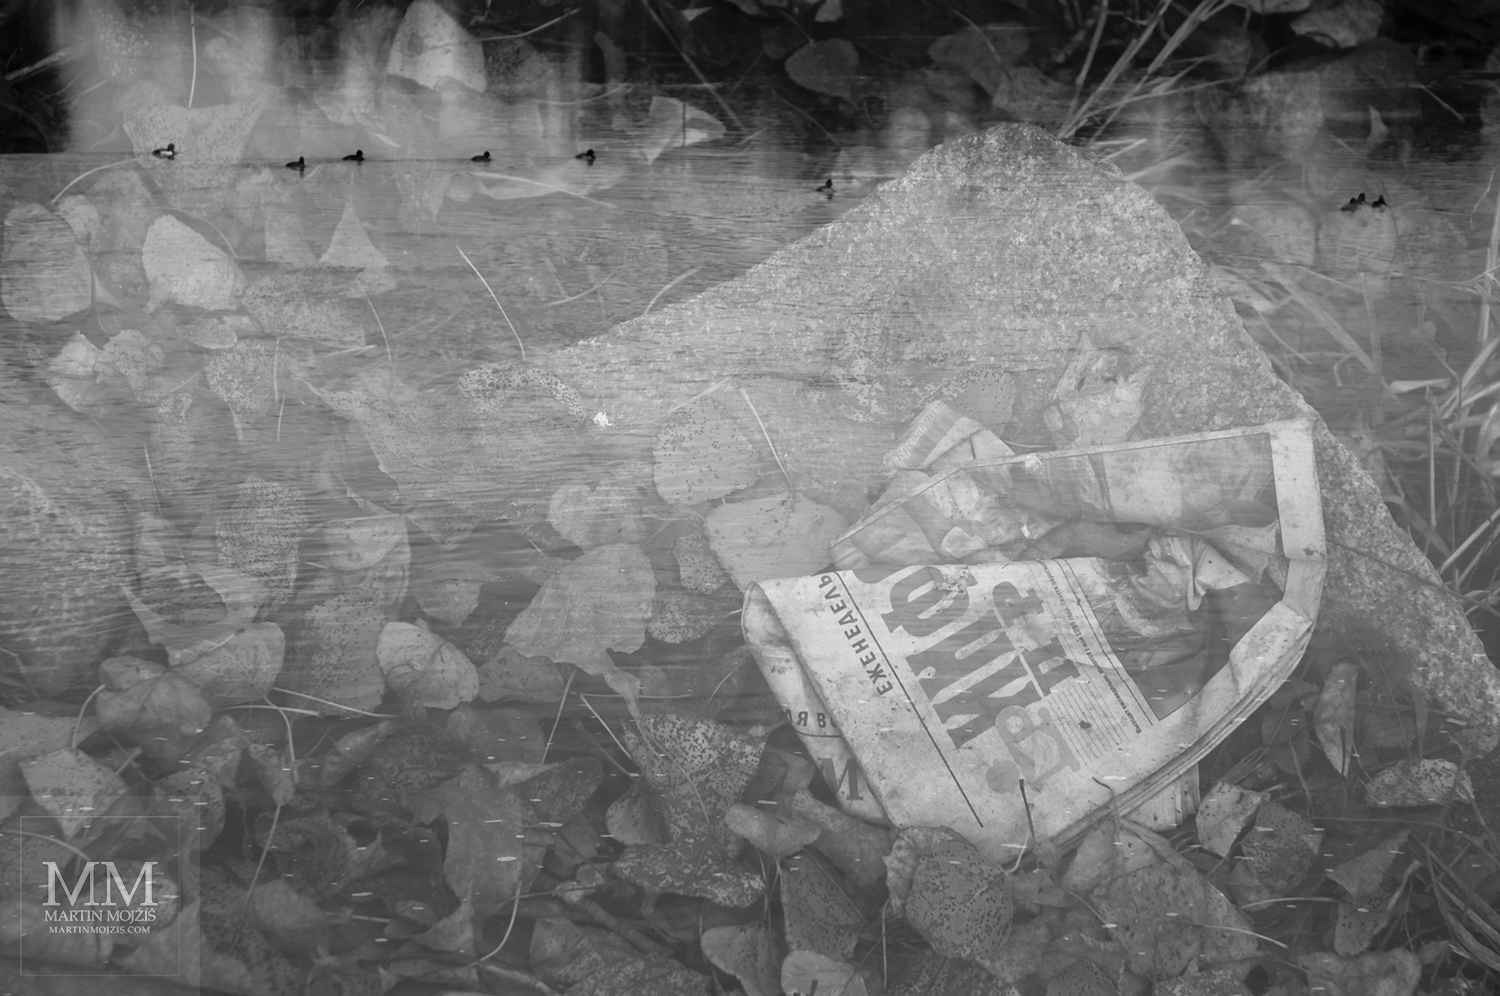 Prolnuté staré noviny a plovoucí vodní ptáci. Umělecká černobílá fotografie Martina Mojžíše s názvem POD VODOU.